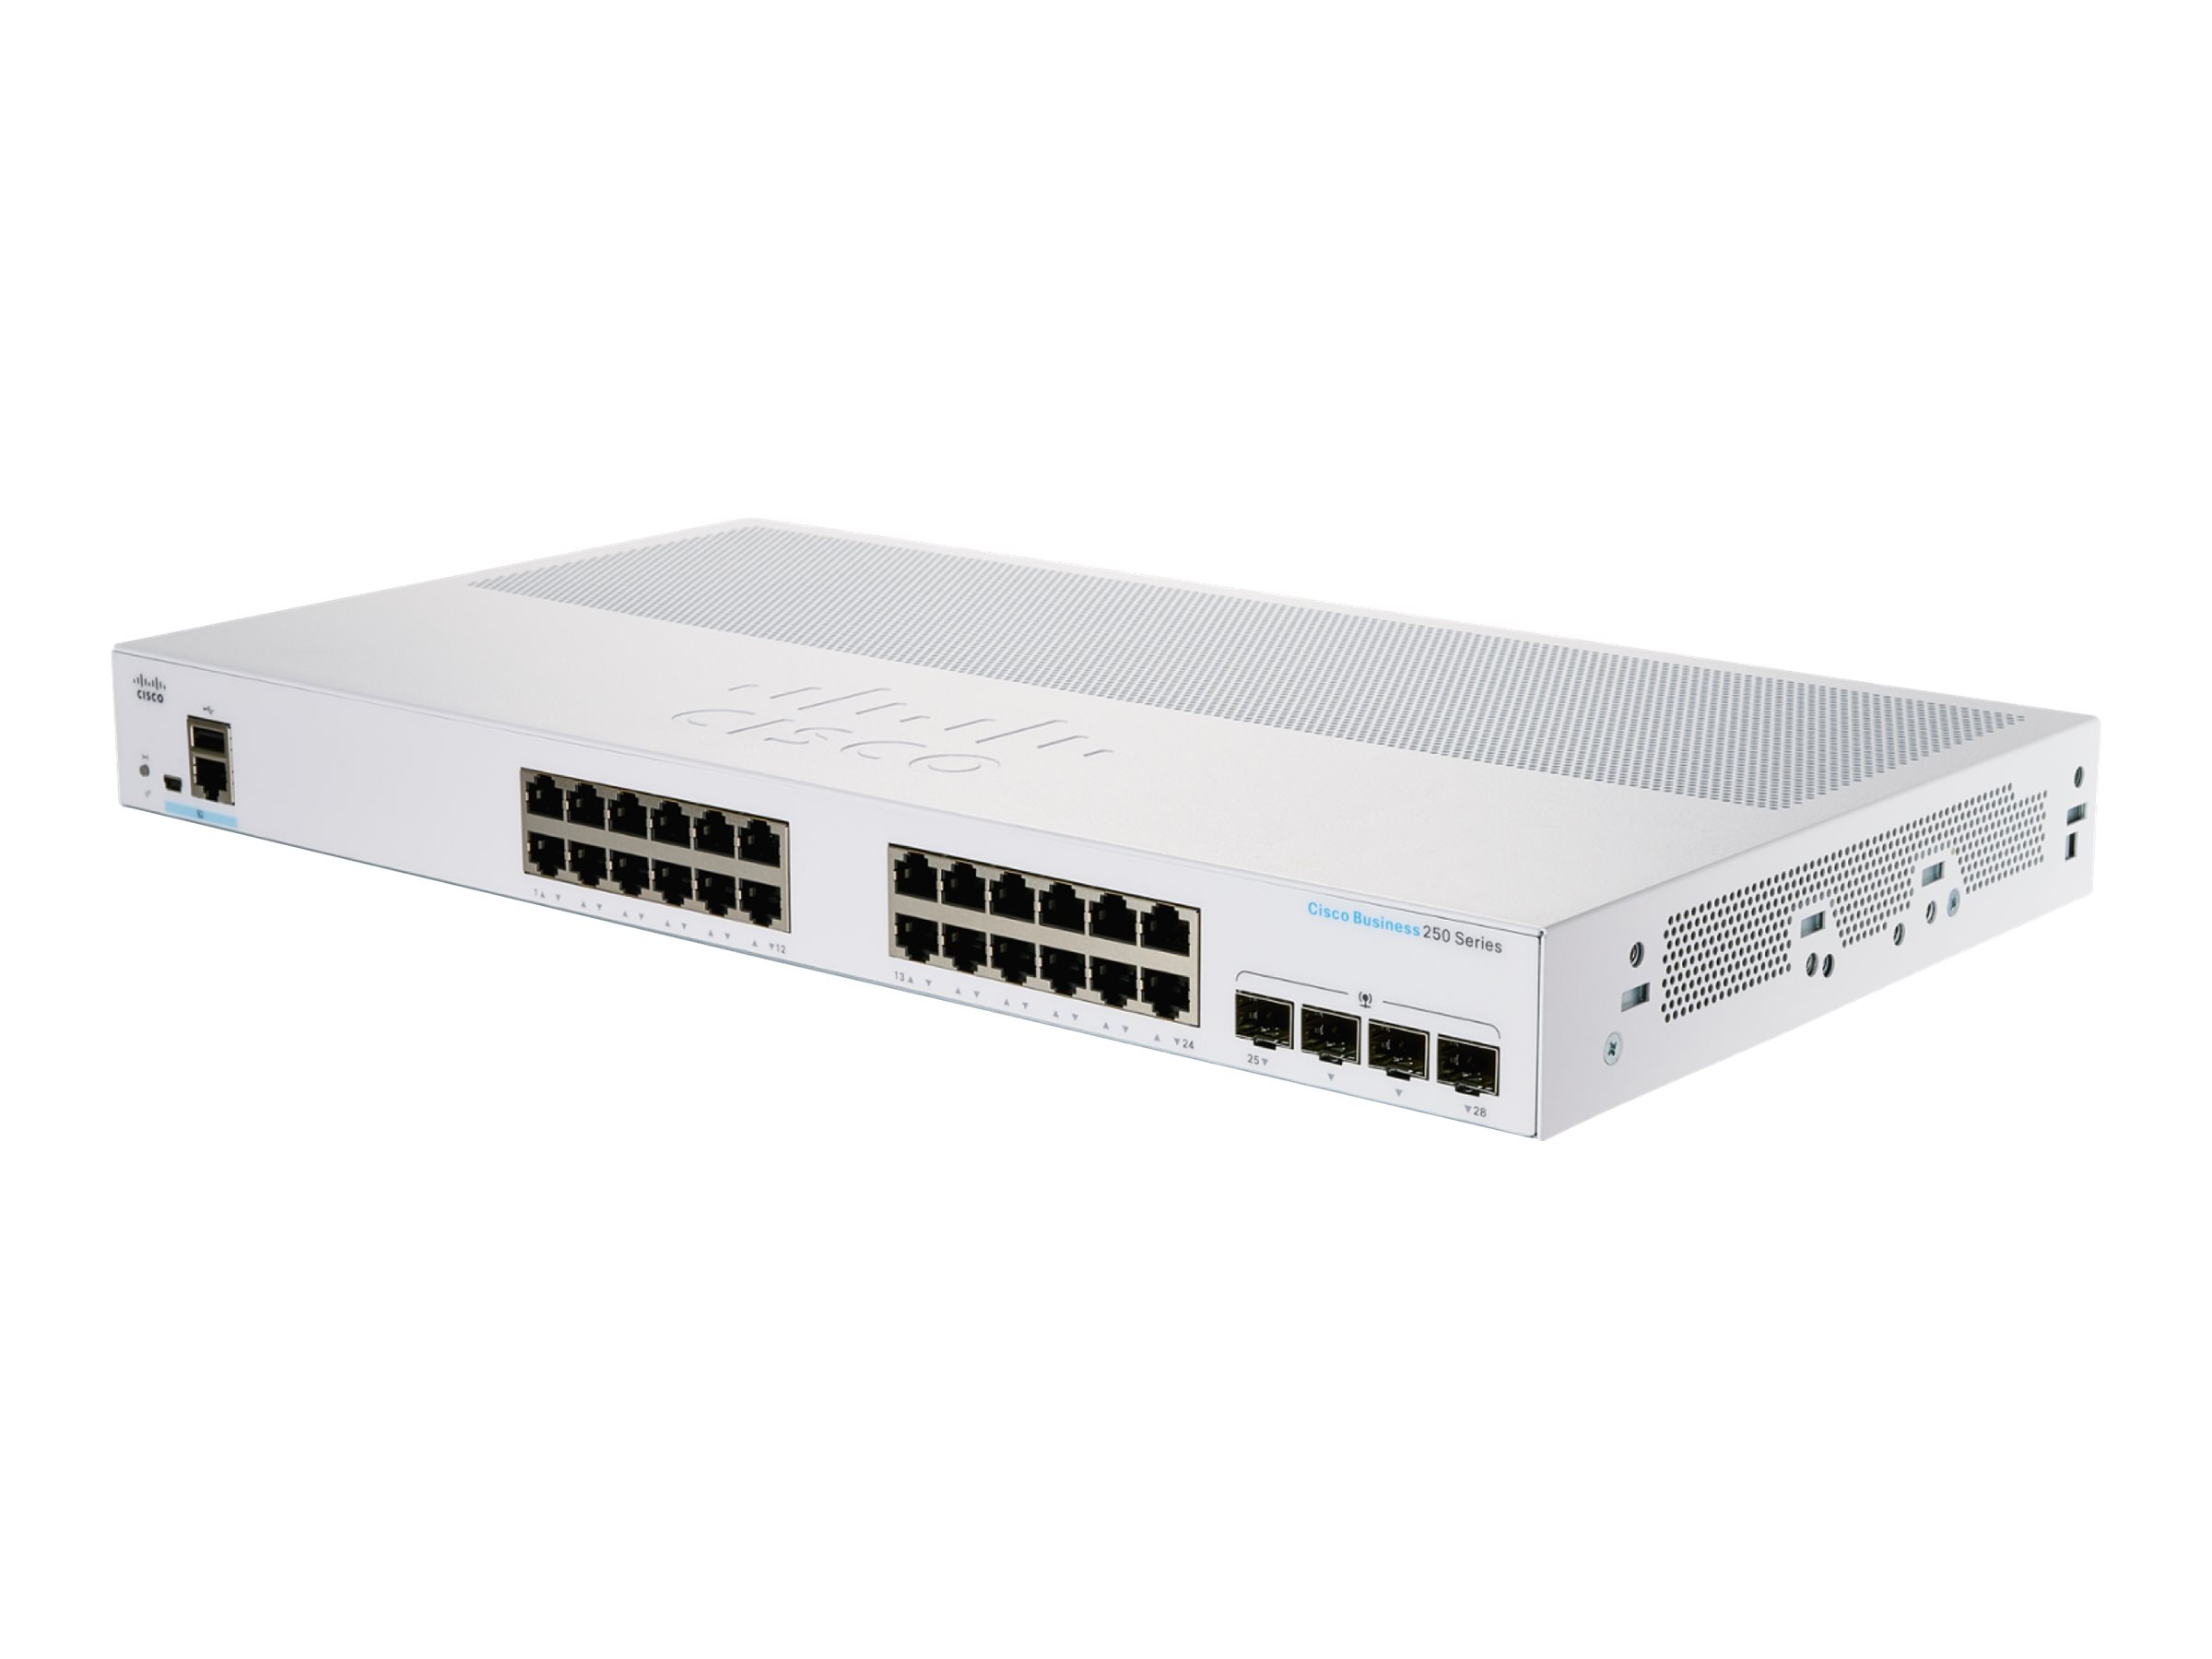 Cisco Business 250 Series CBS250-24PP-4G - Commutateur - C3 - intelligent - 24 x 10/100/1000 (PoE+) + 4 x Gigabit SFP - Montable sur rack - PoE+ (100 W) - CBS250-24PP-4G-EU - Concentrateurs et commutateurs gigabit